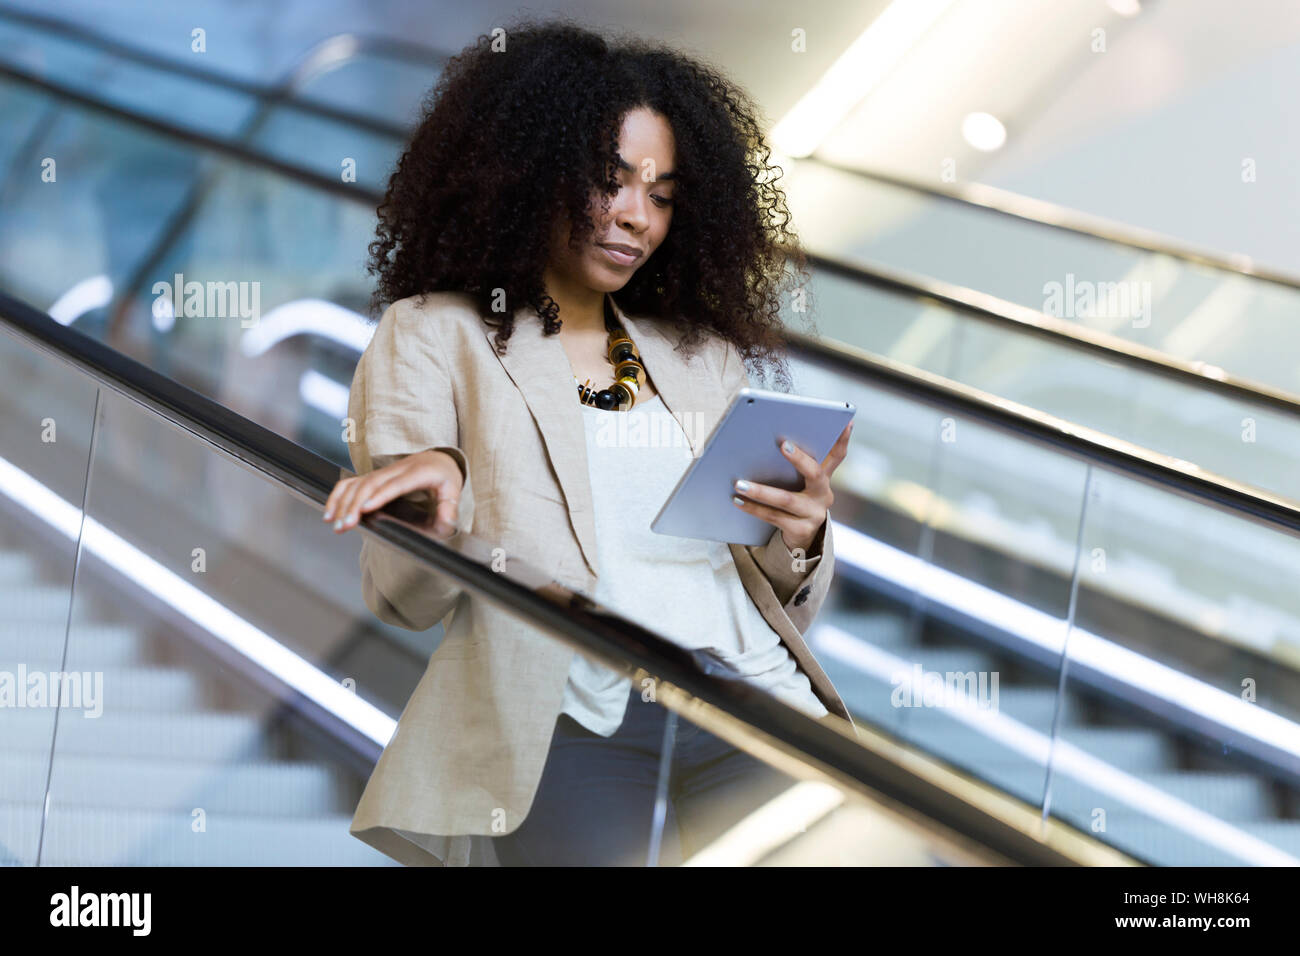 Young businesswoman using a tablet sur un escalator Banque D'Images